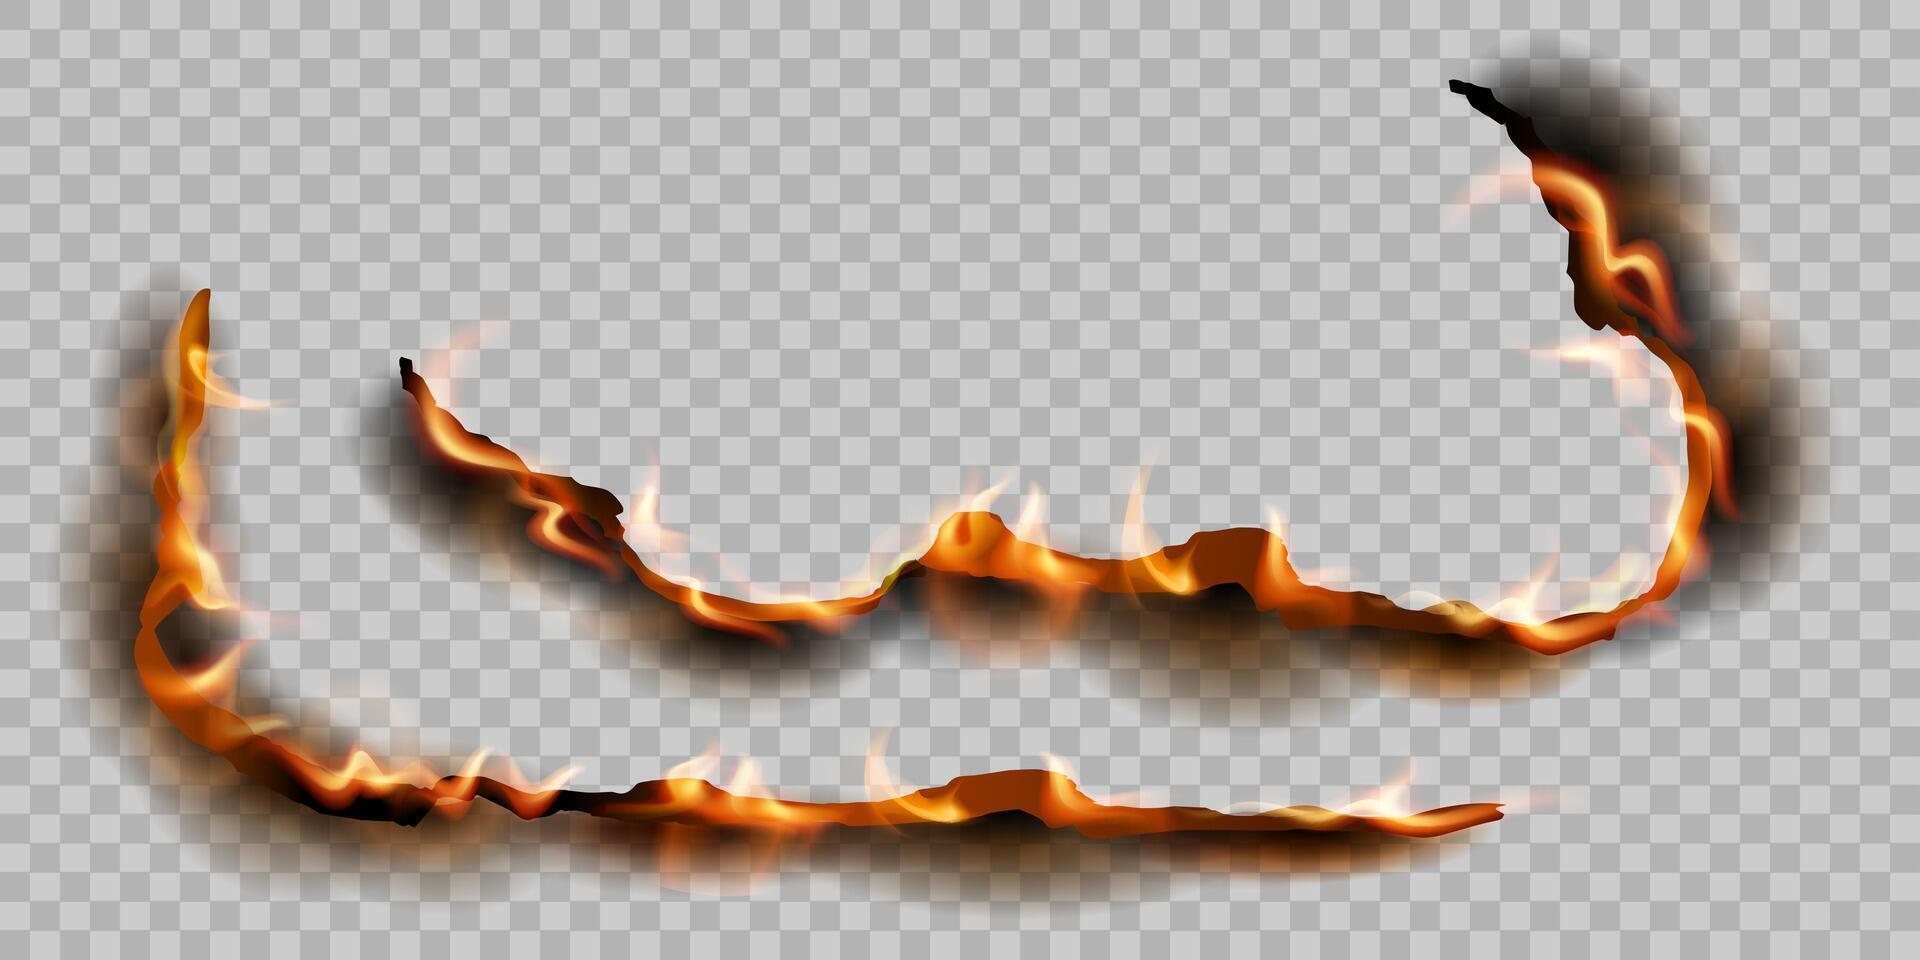 realistico bruciato carta bordi elementi con fuoco e nero cenere vettore